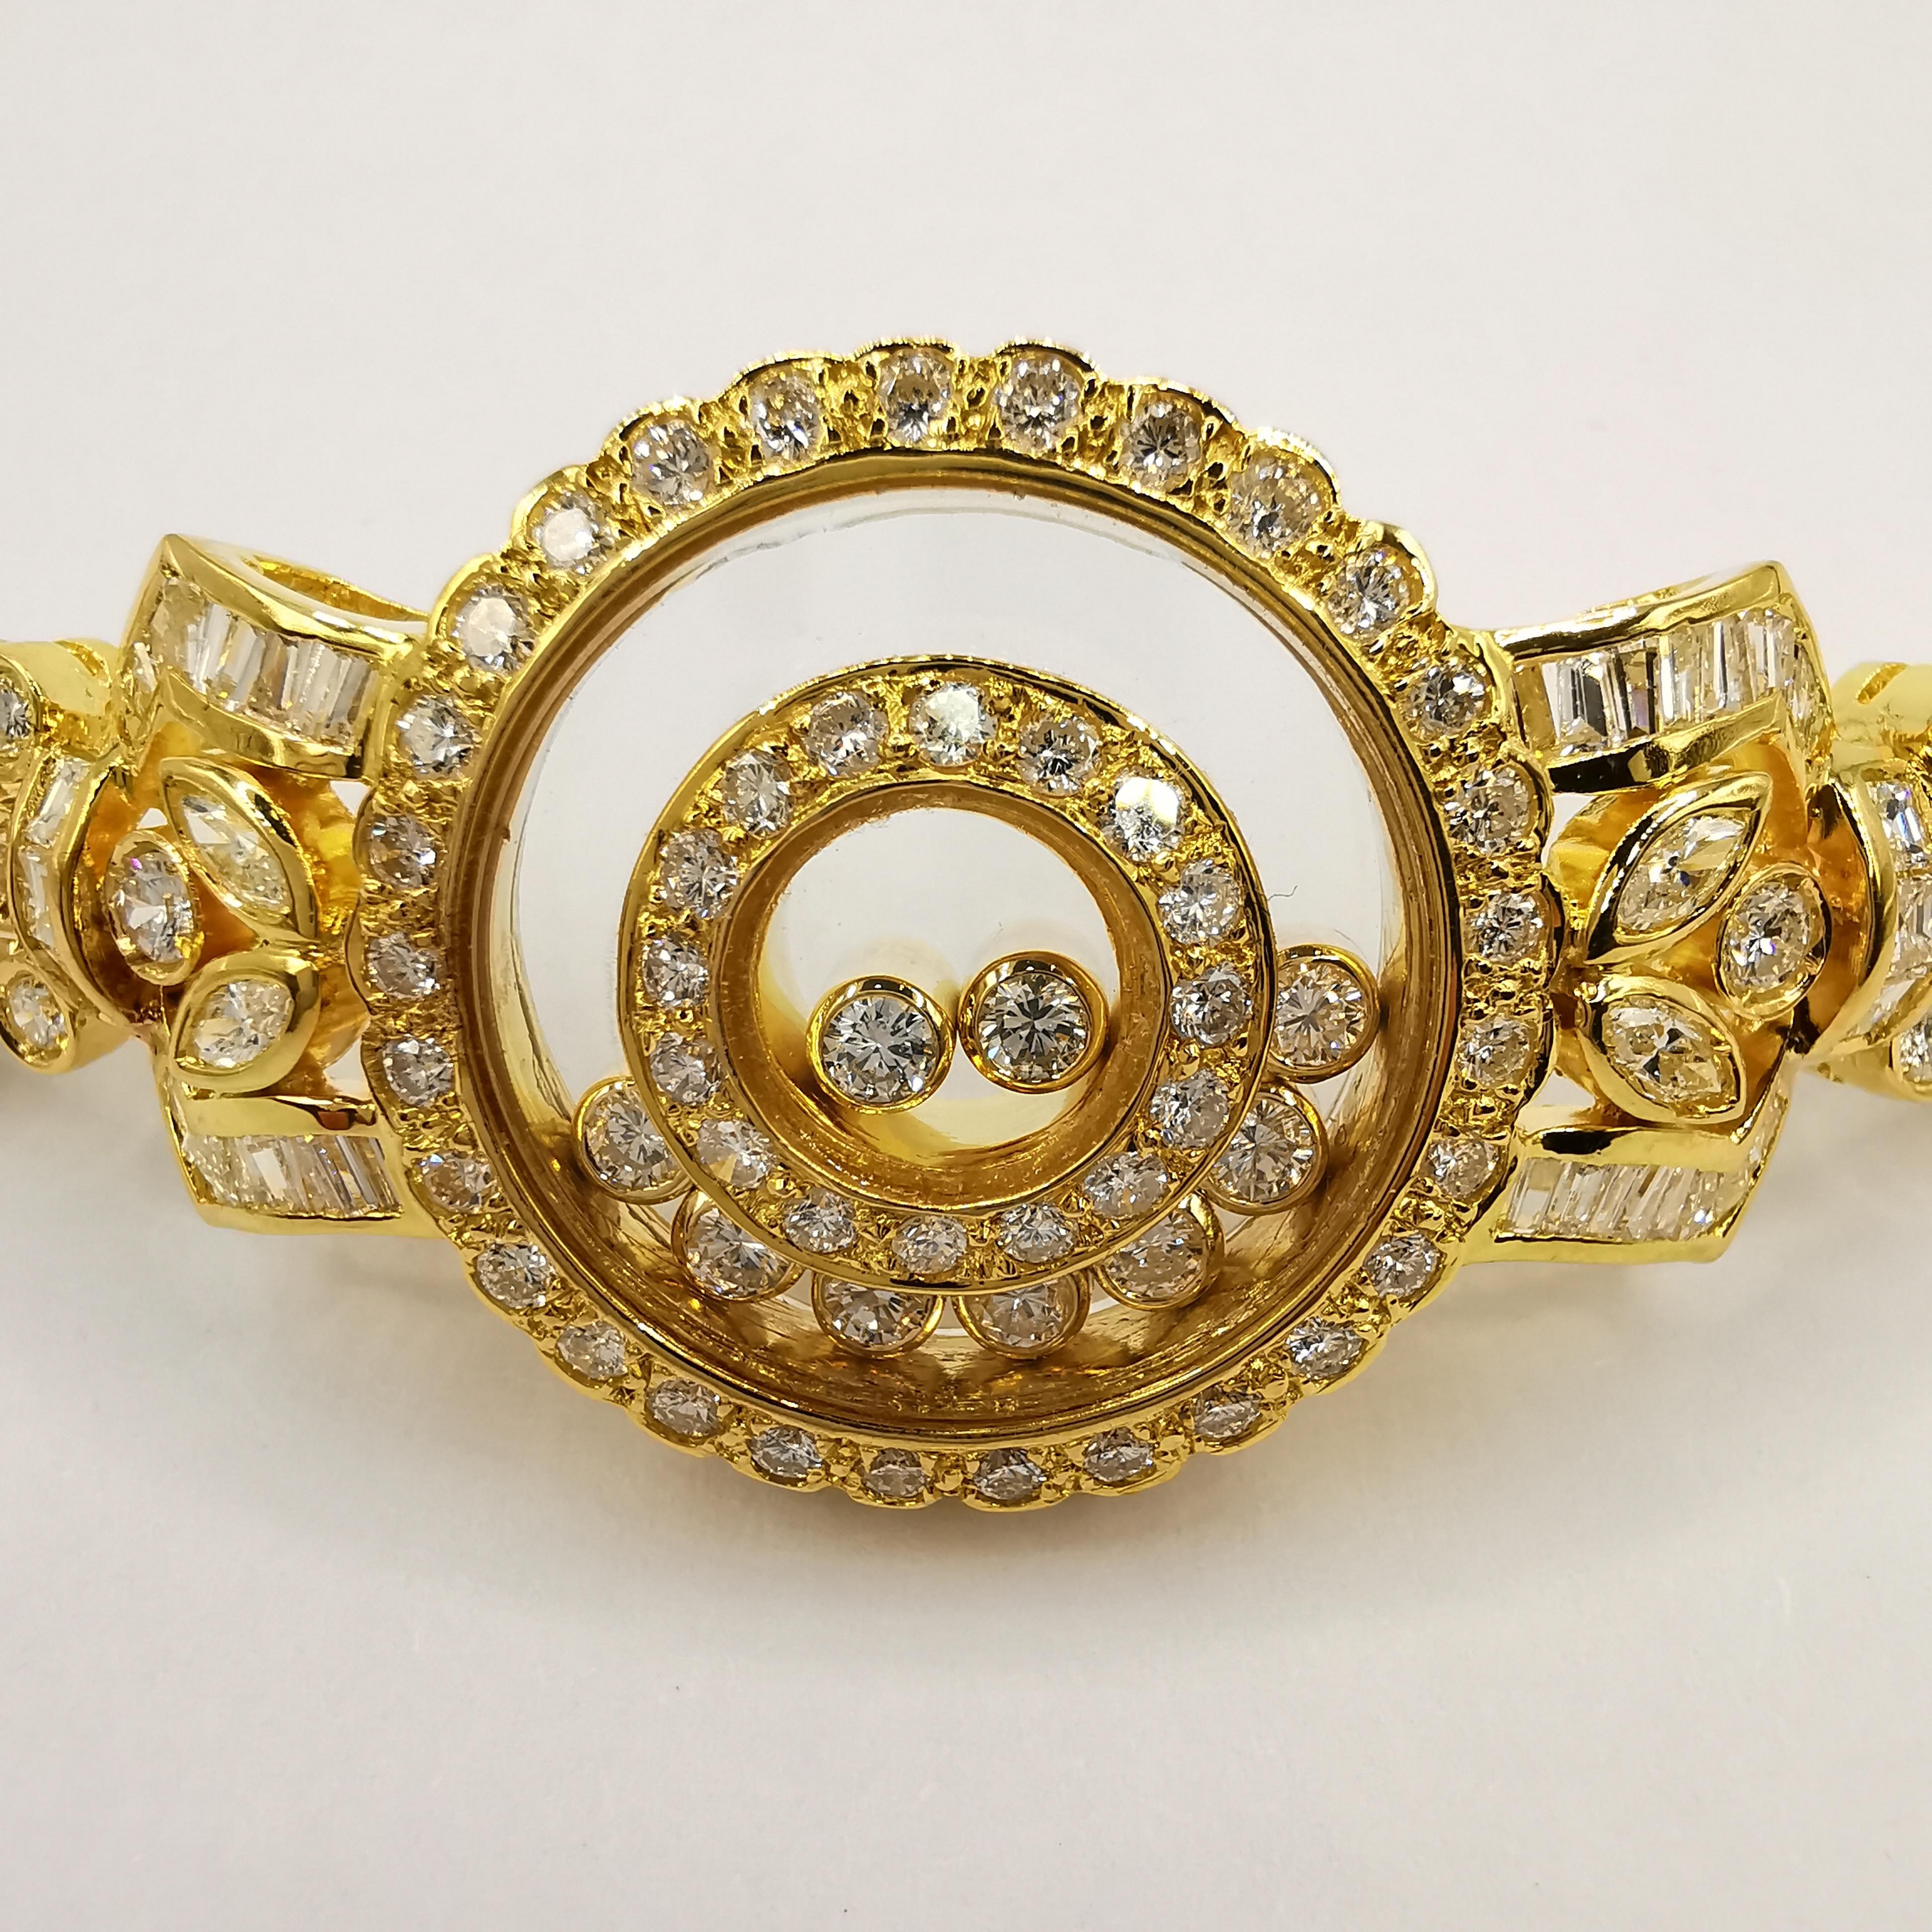 Ce bracelet Happy Diamond de 5,42 carats en or jaune 18 carats est un somptueux bijou qui respire l'élégance et la sophistication. La pièce centrale comporte 9 diamants ronds mobiles, d'une valeur totale d'environ 0,45 carat. Deux des diamants